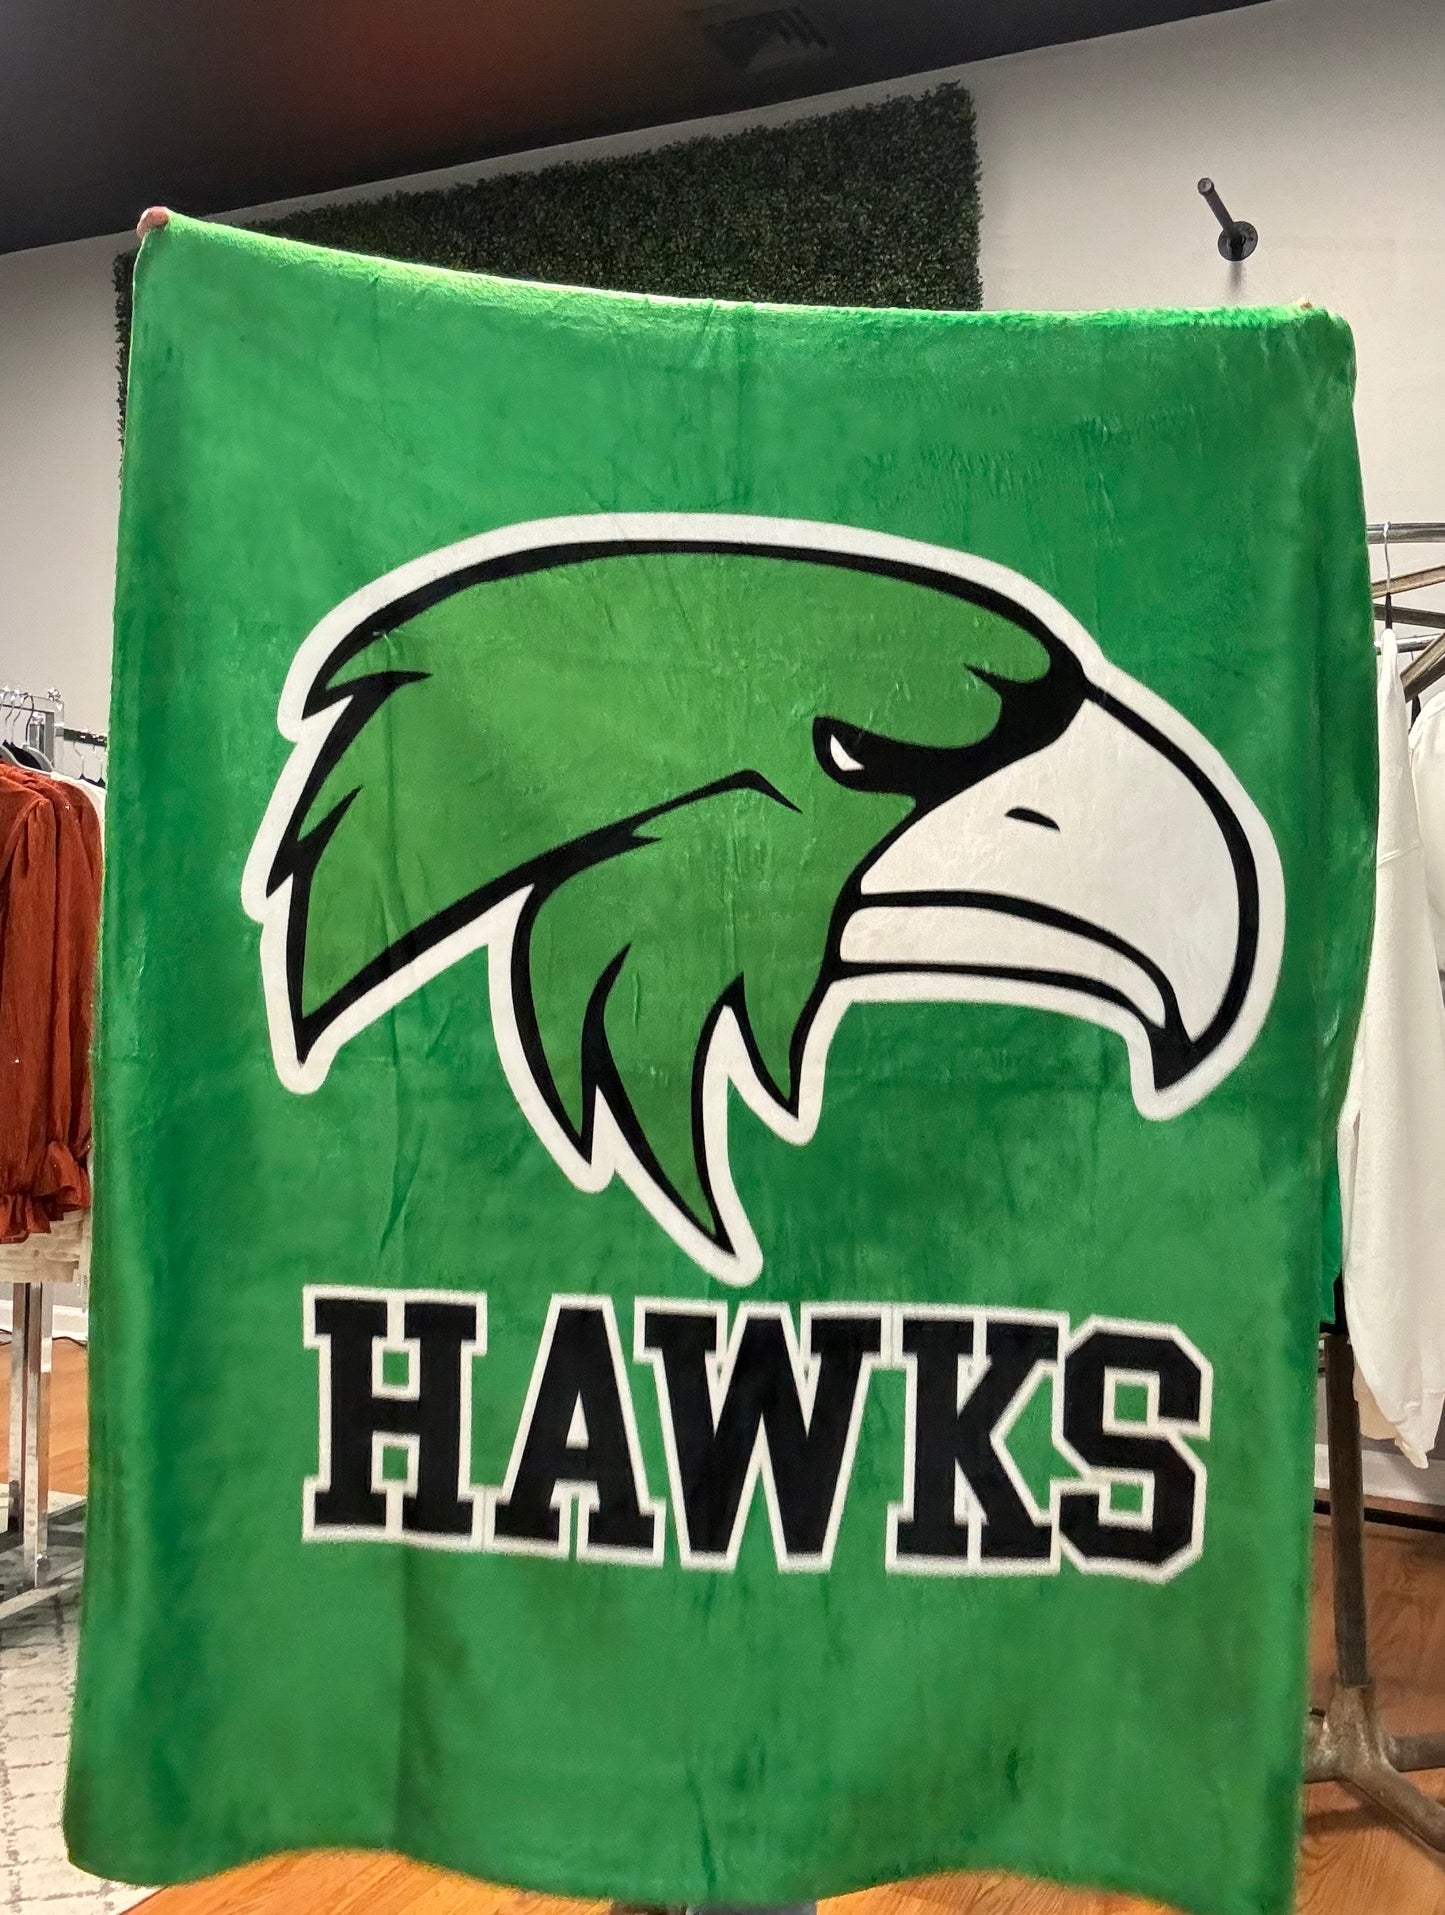 Hawks Minky Blanket